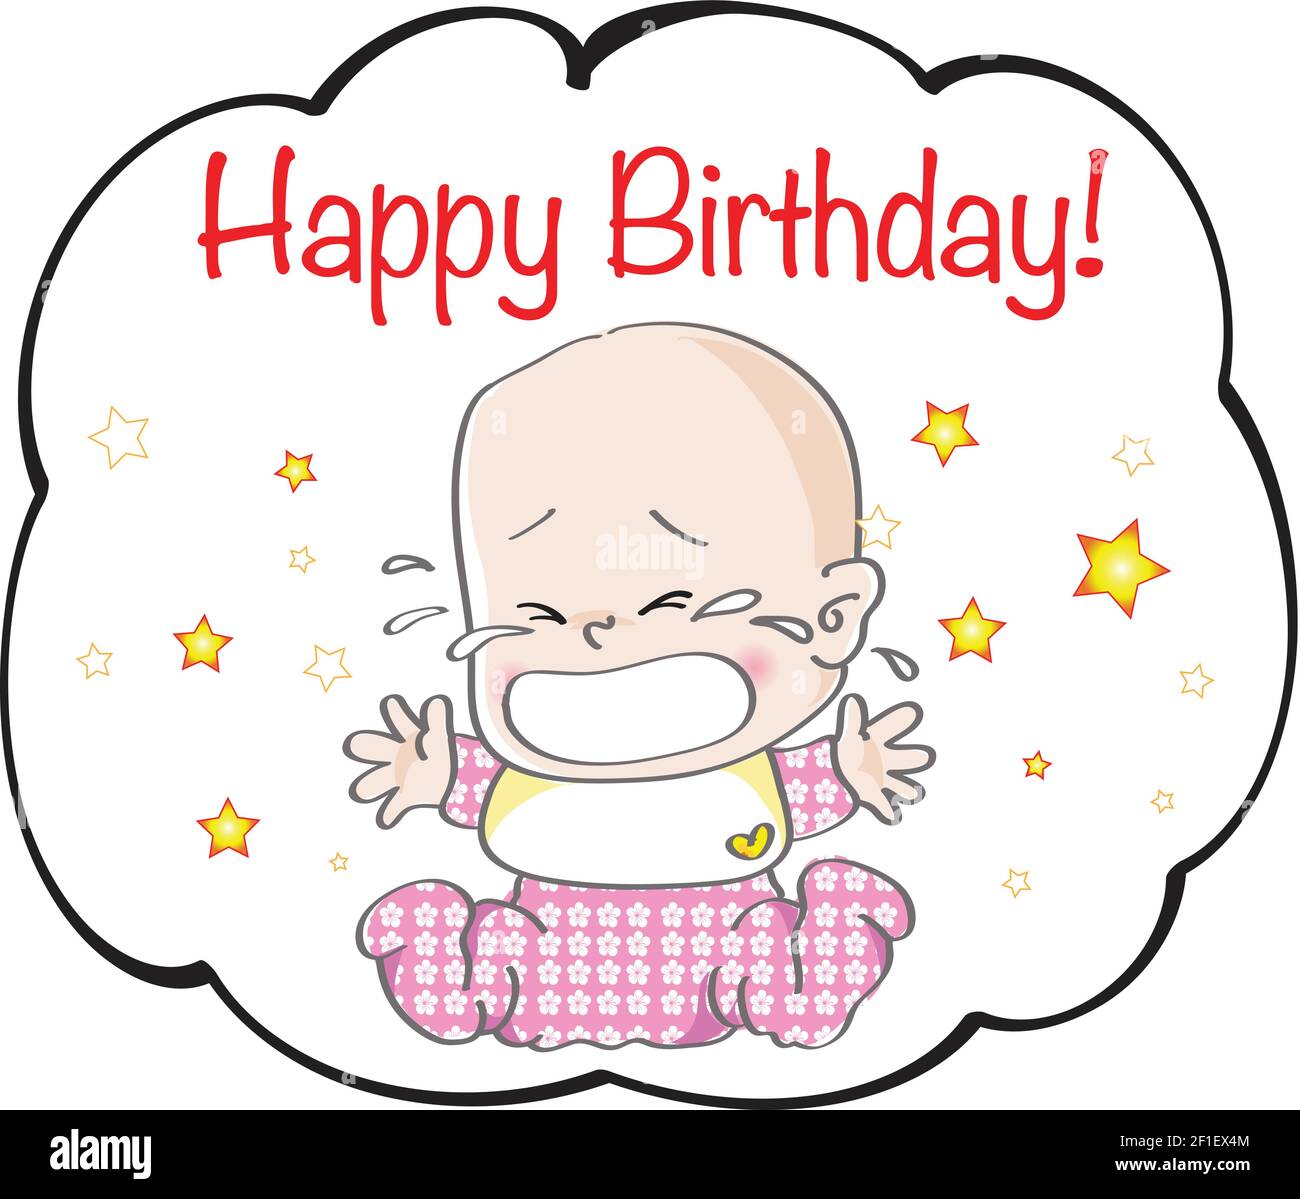 vector cartoon new born baby crying Happy birthday card Stock ...